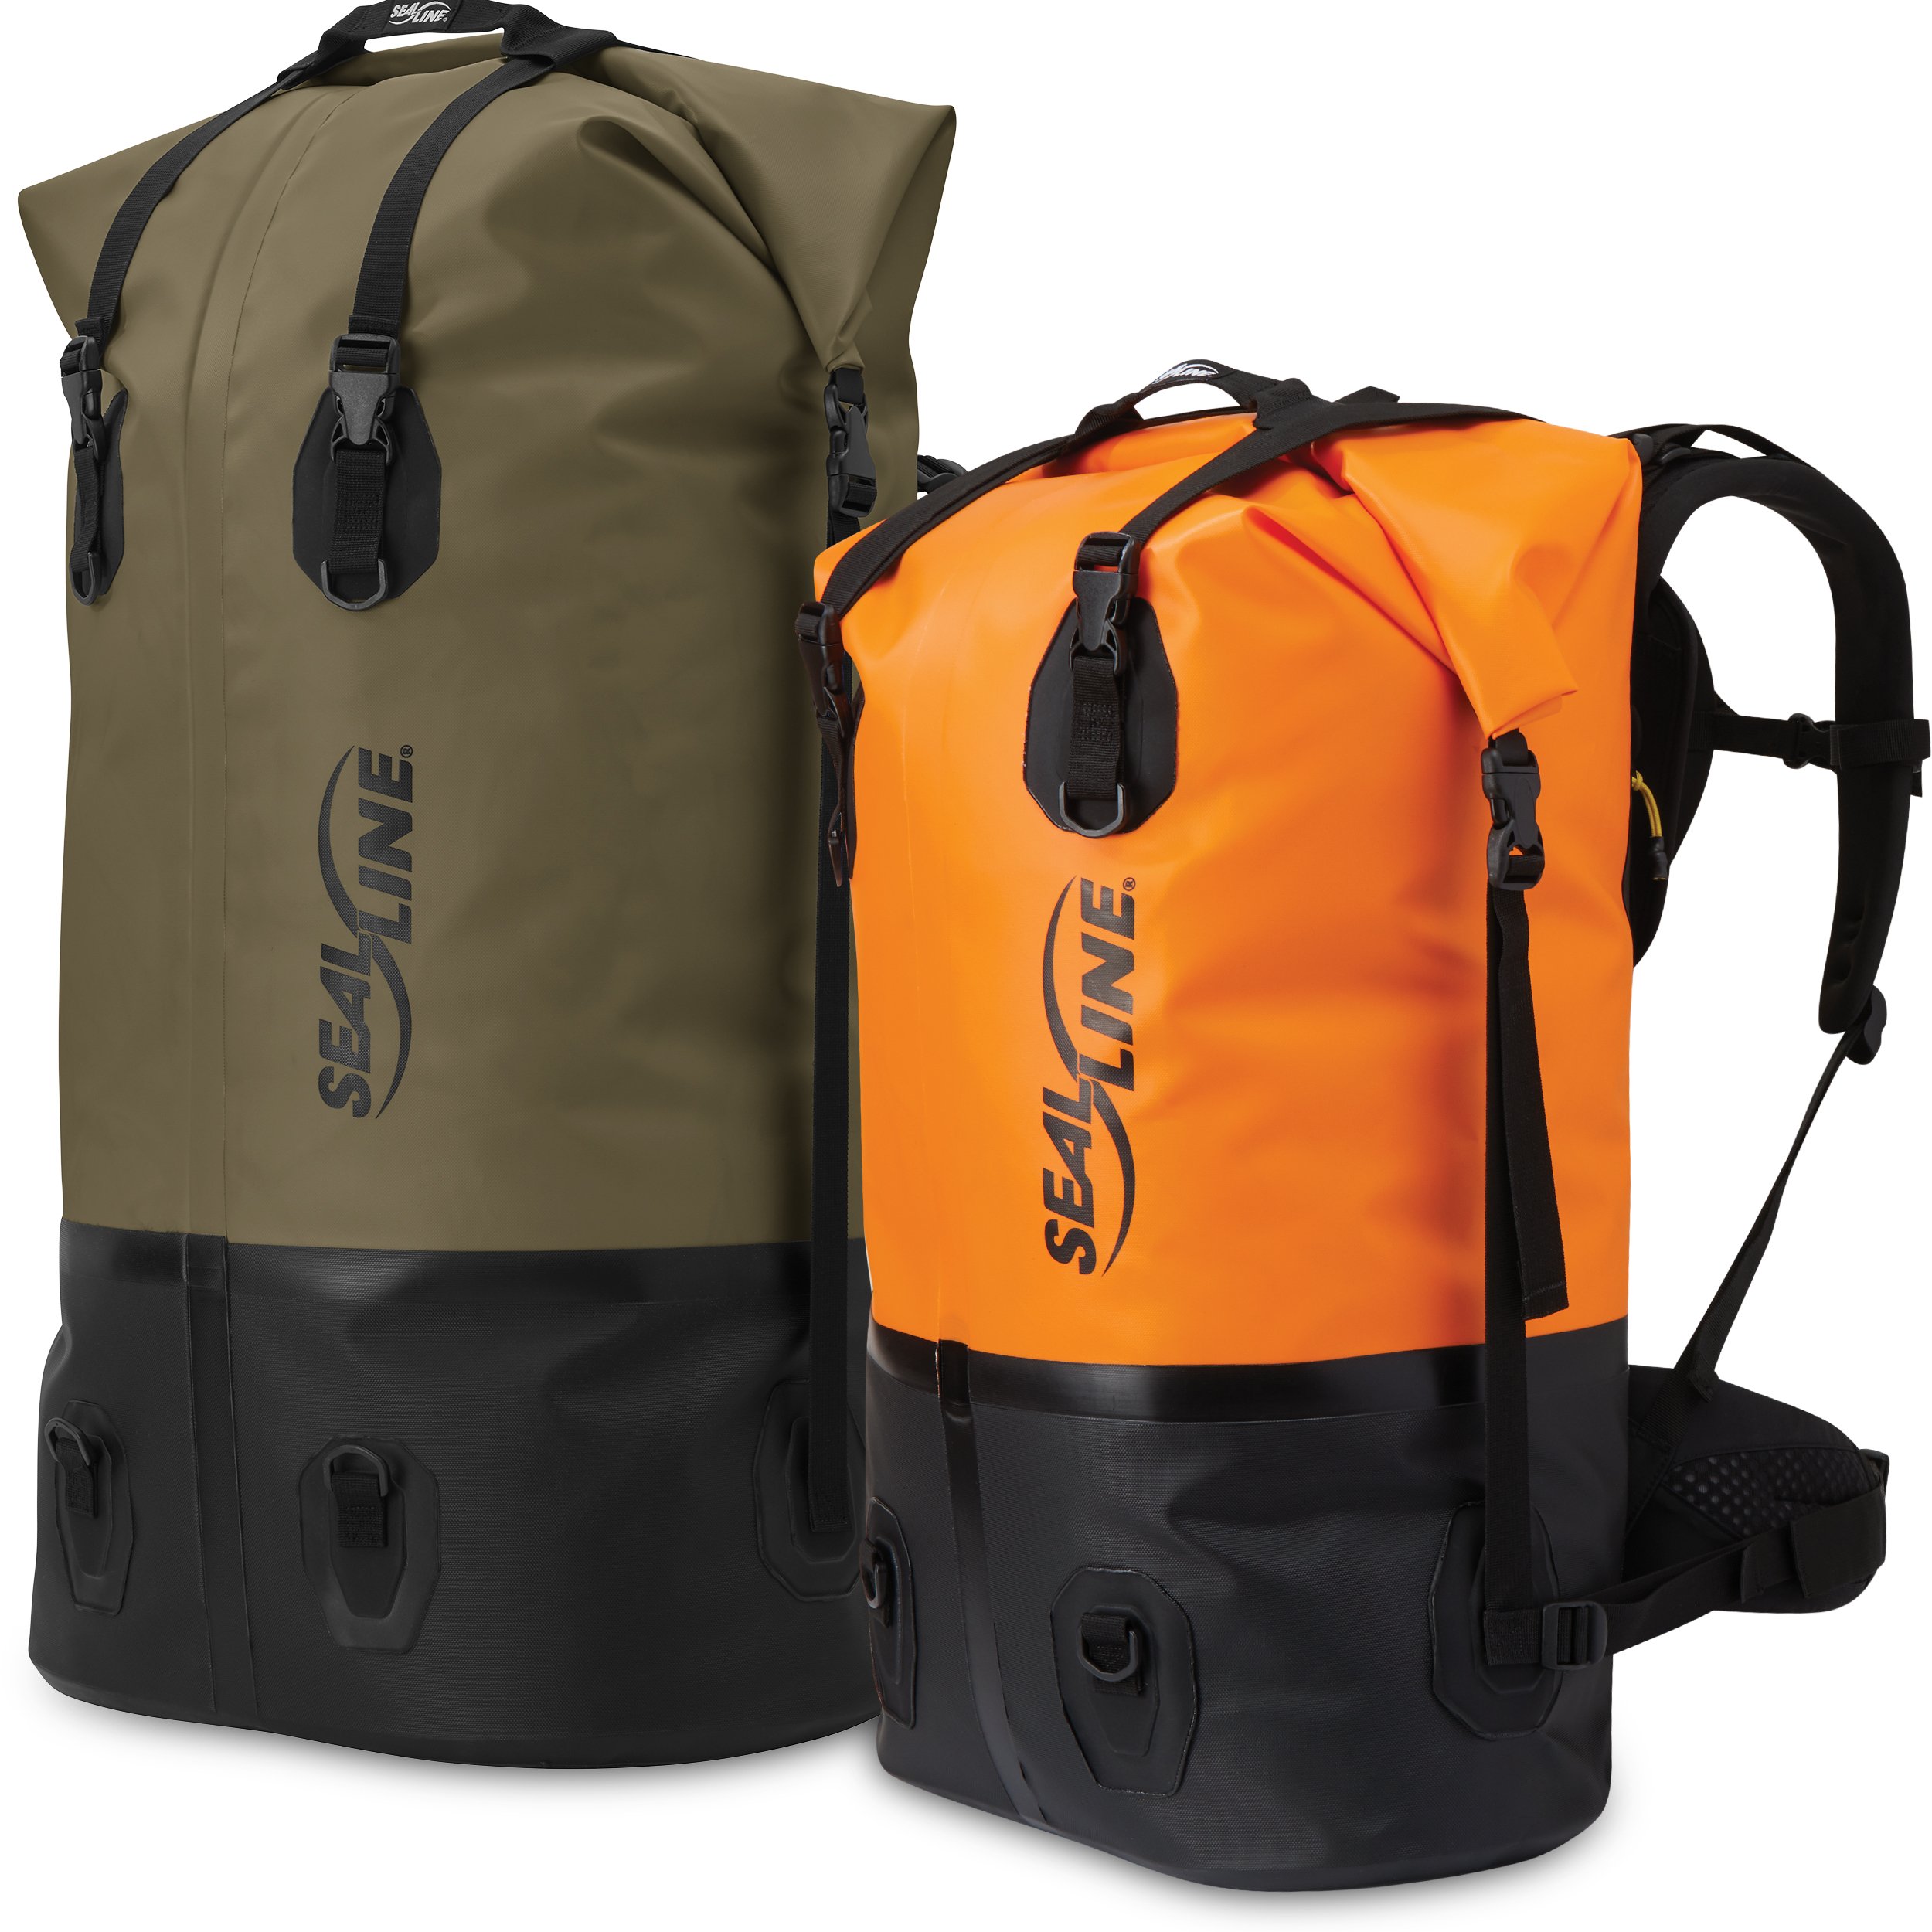 Pro™ Dry Pack - Waterproof Portage Backpack